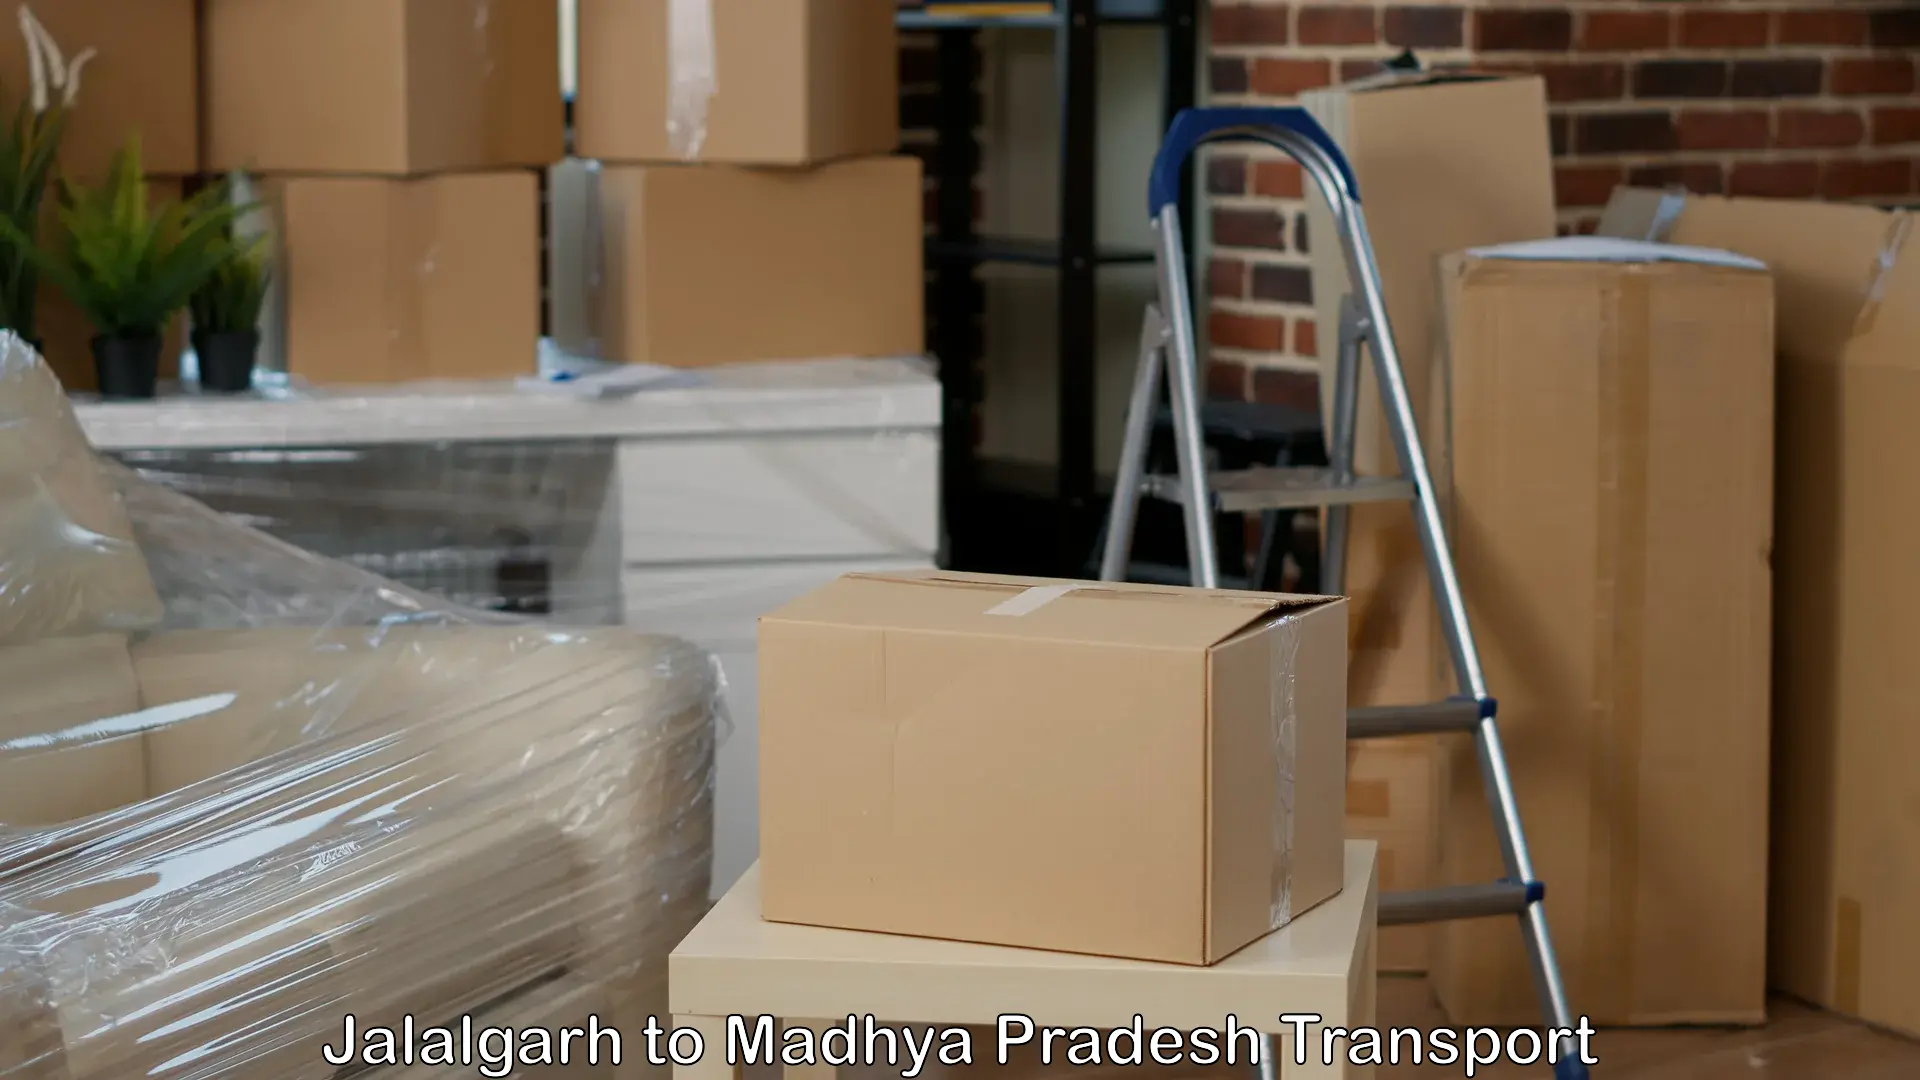 Shipping partner Jalalgarh to Katni